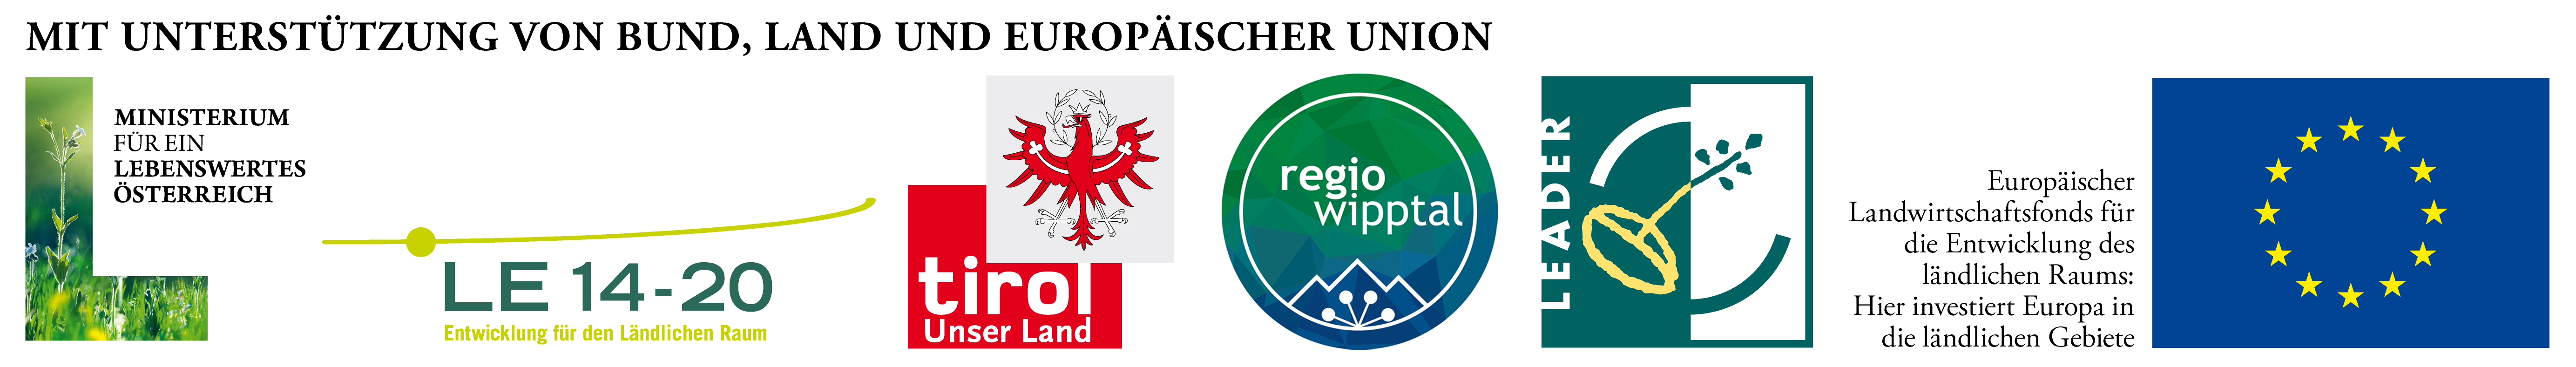 Logos von Bund, Land und europäischer Union